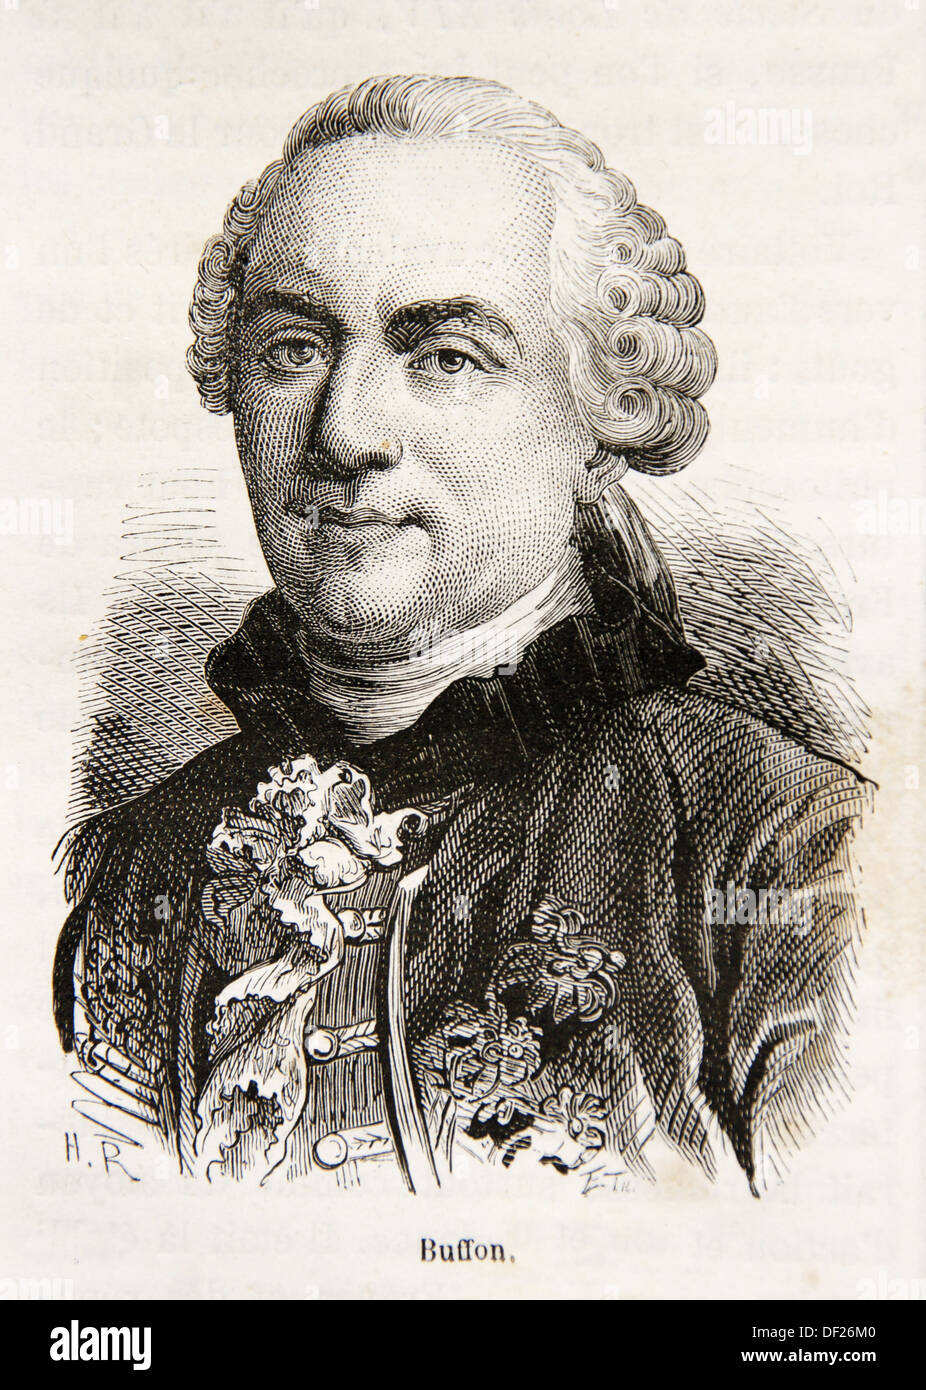 Georges-Louis Leclerc, Comte de BUFFON 7 September 1707 - 16 April 1788 was - georges-louis-leclerc-comte-de-buffon-7-september-1707-16-april-1788-DF26M0